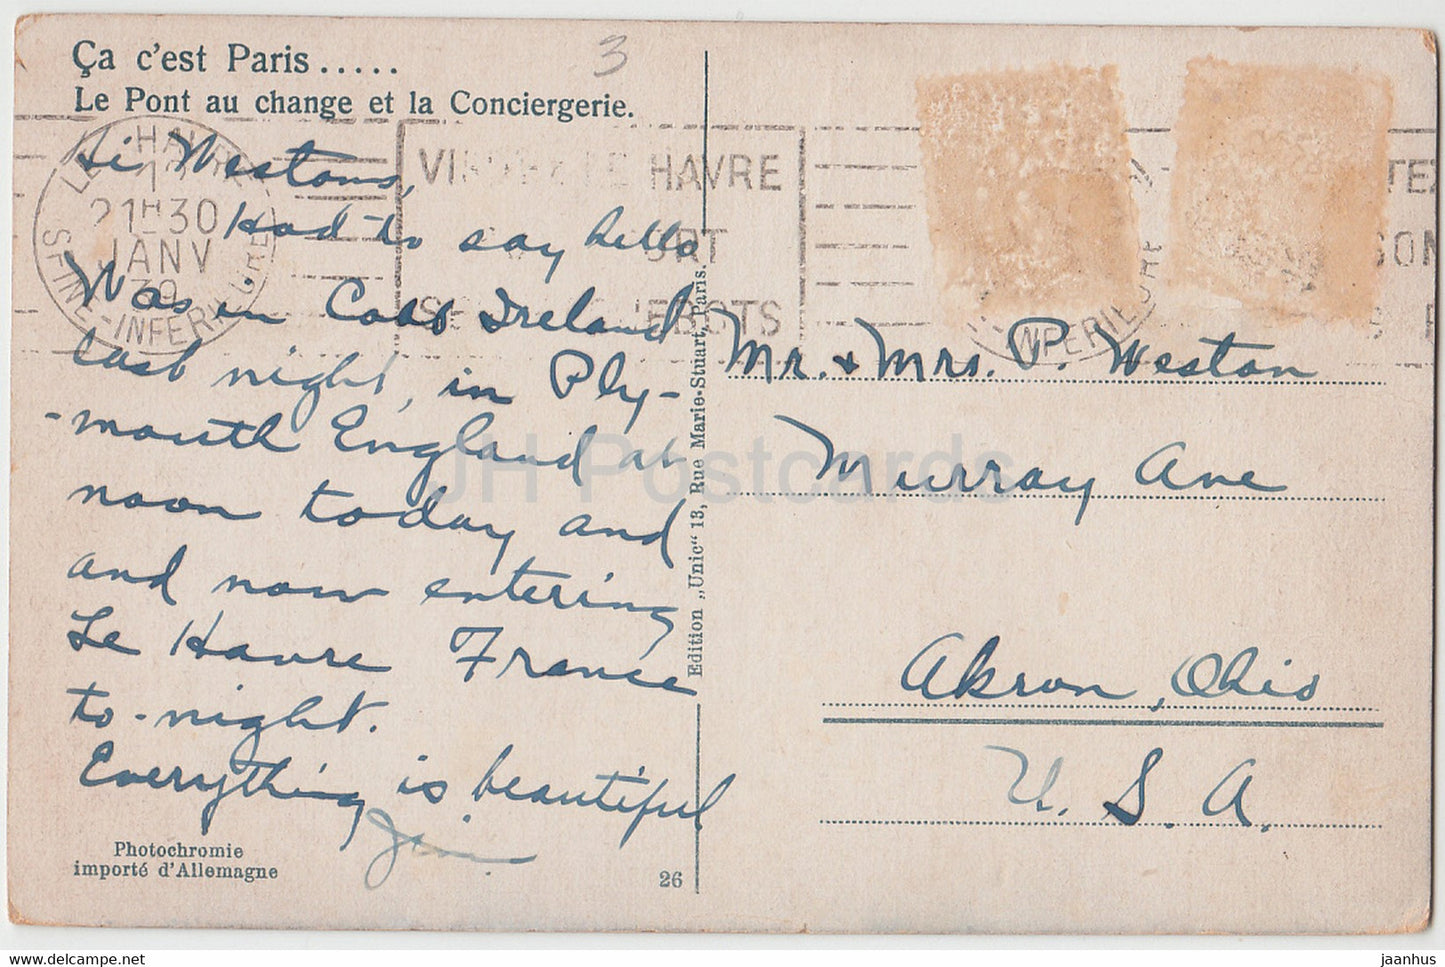 Paris - Le Pont au change et la Conciergerie - tram - bridge - 26 - old postcard - 1939 - France - used